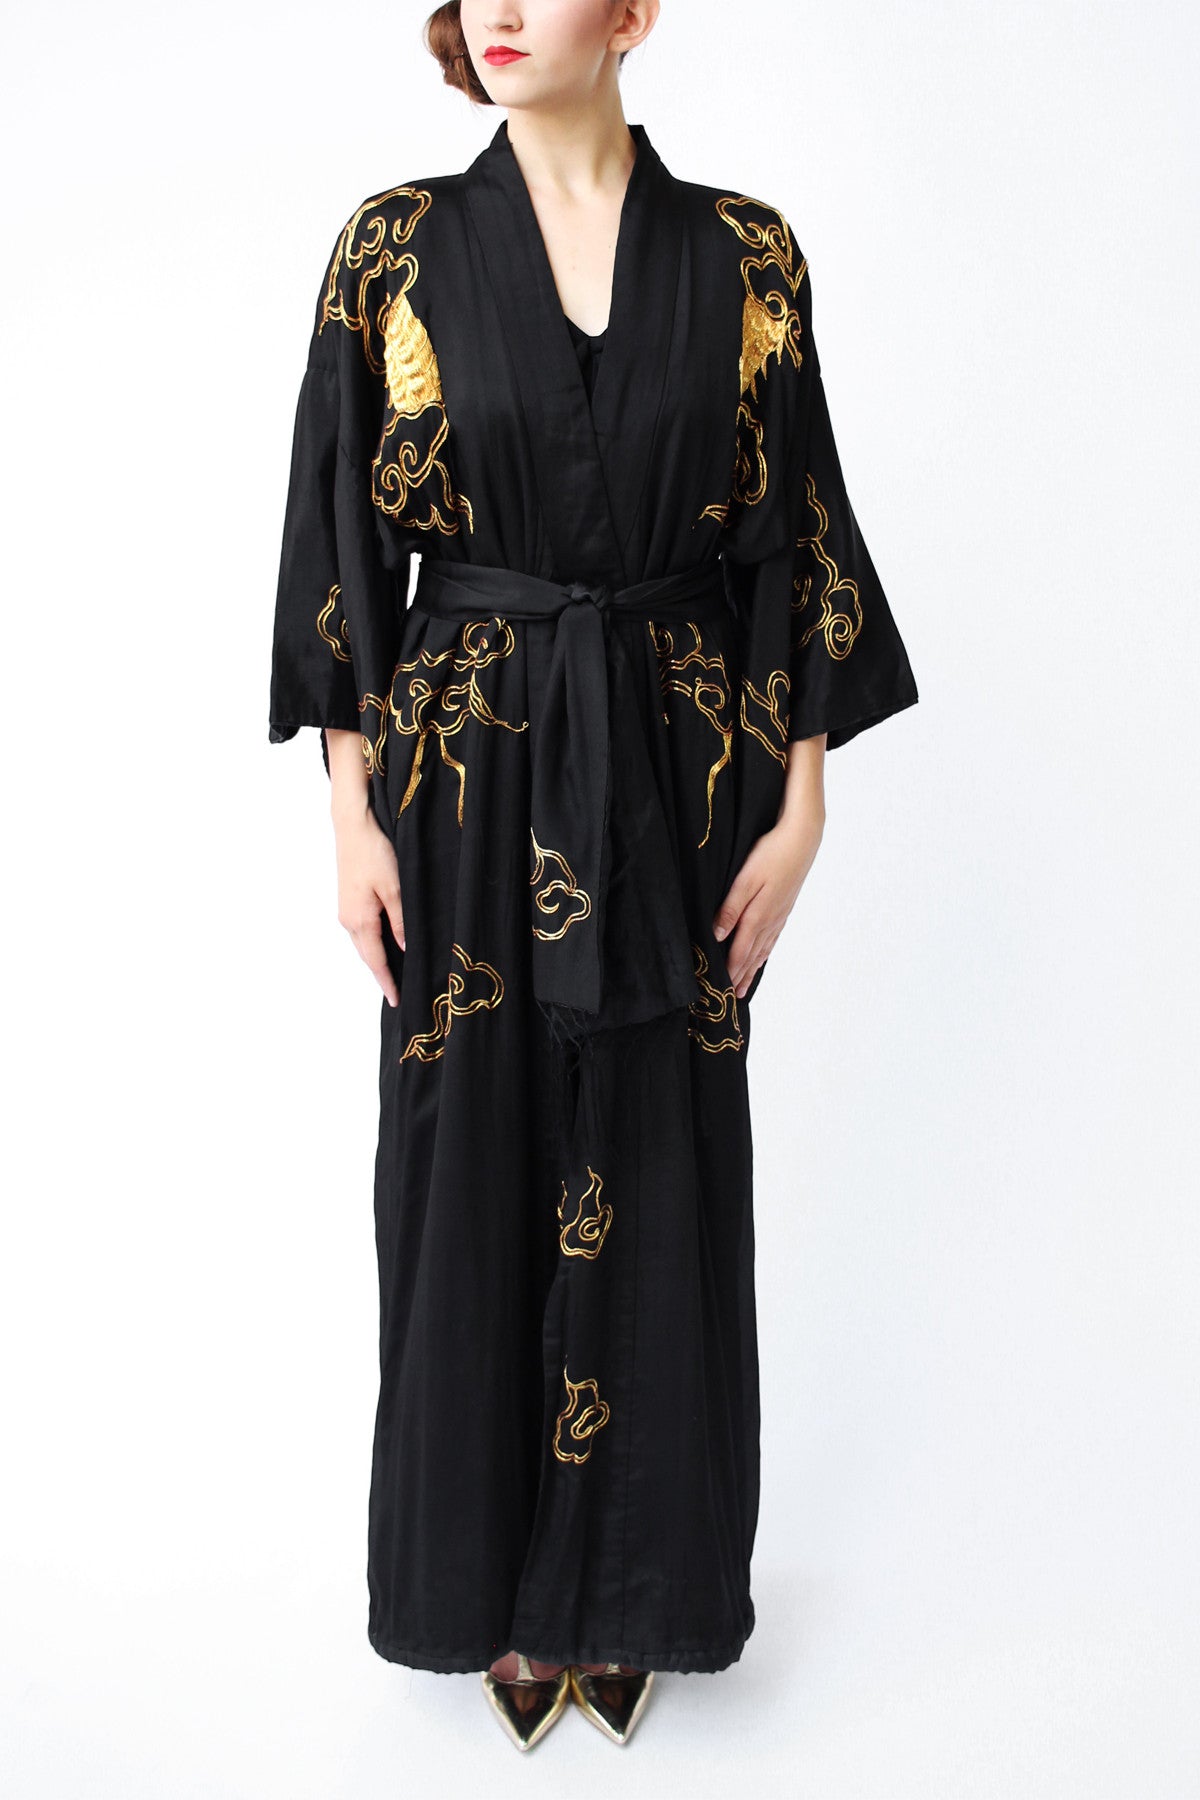 Rare 1920s Black and Gold Embroidered Dragon Kimono Robe